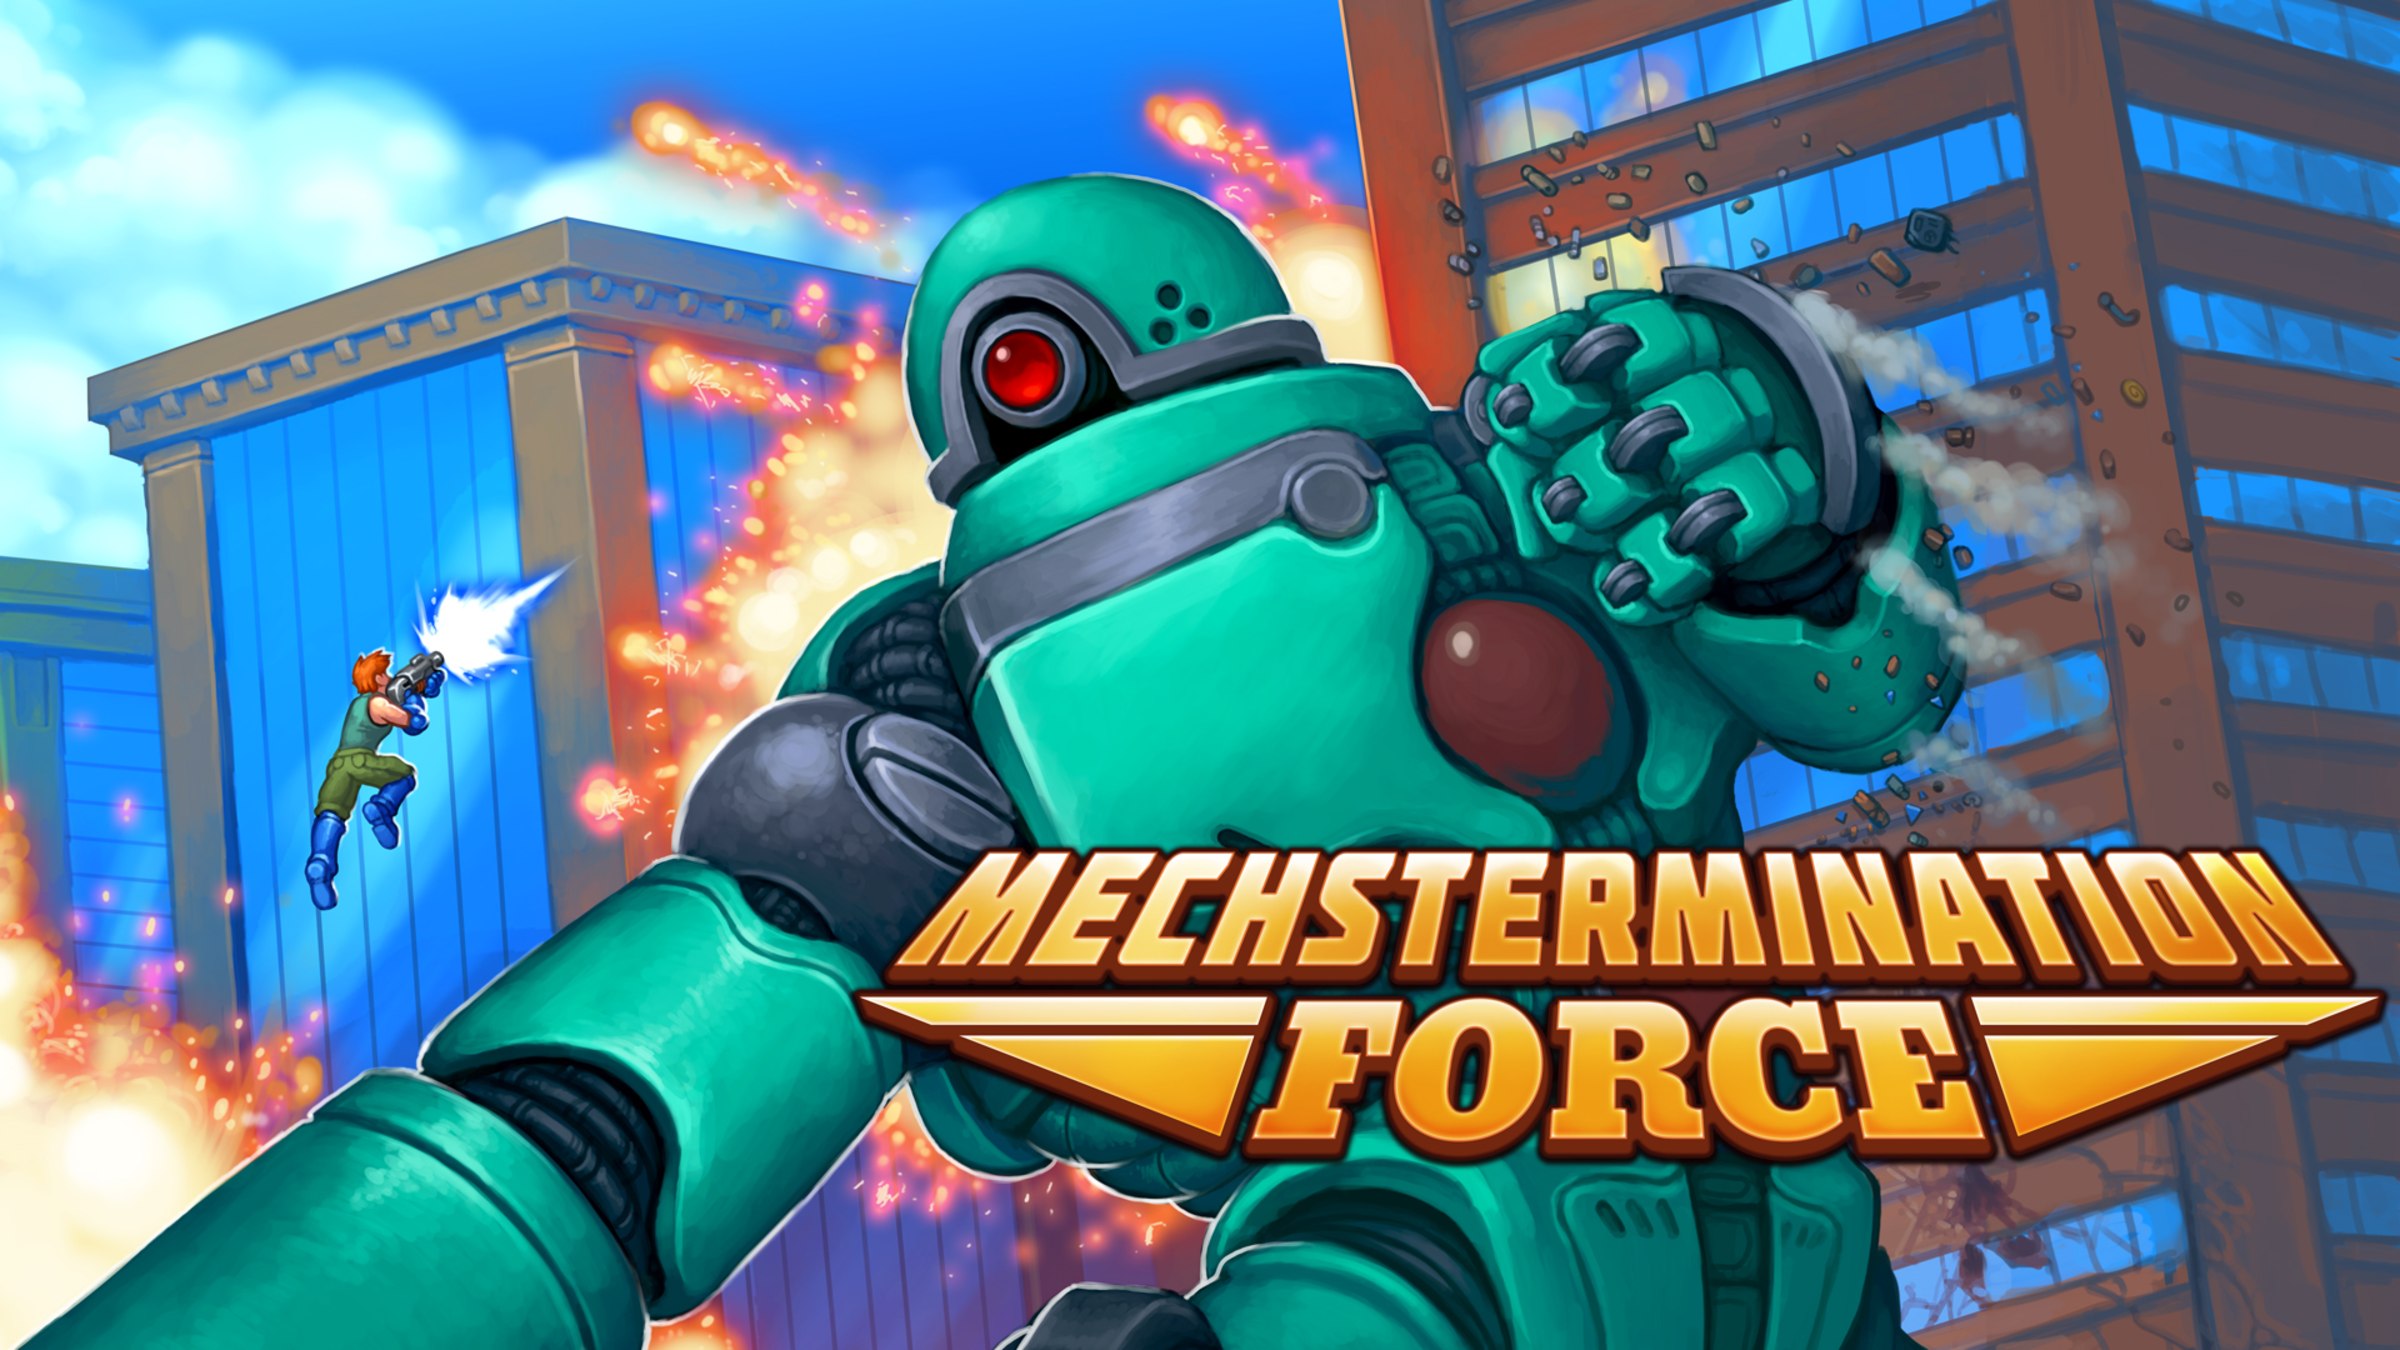 backup navneord fuldstændig Mechstermination Force for Nintendo Switch - Nintendo Official Site